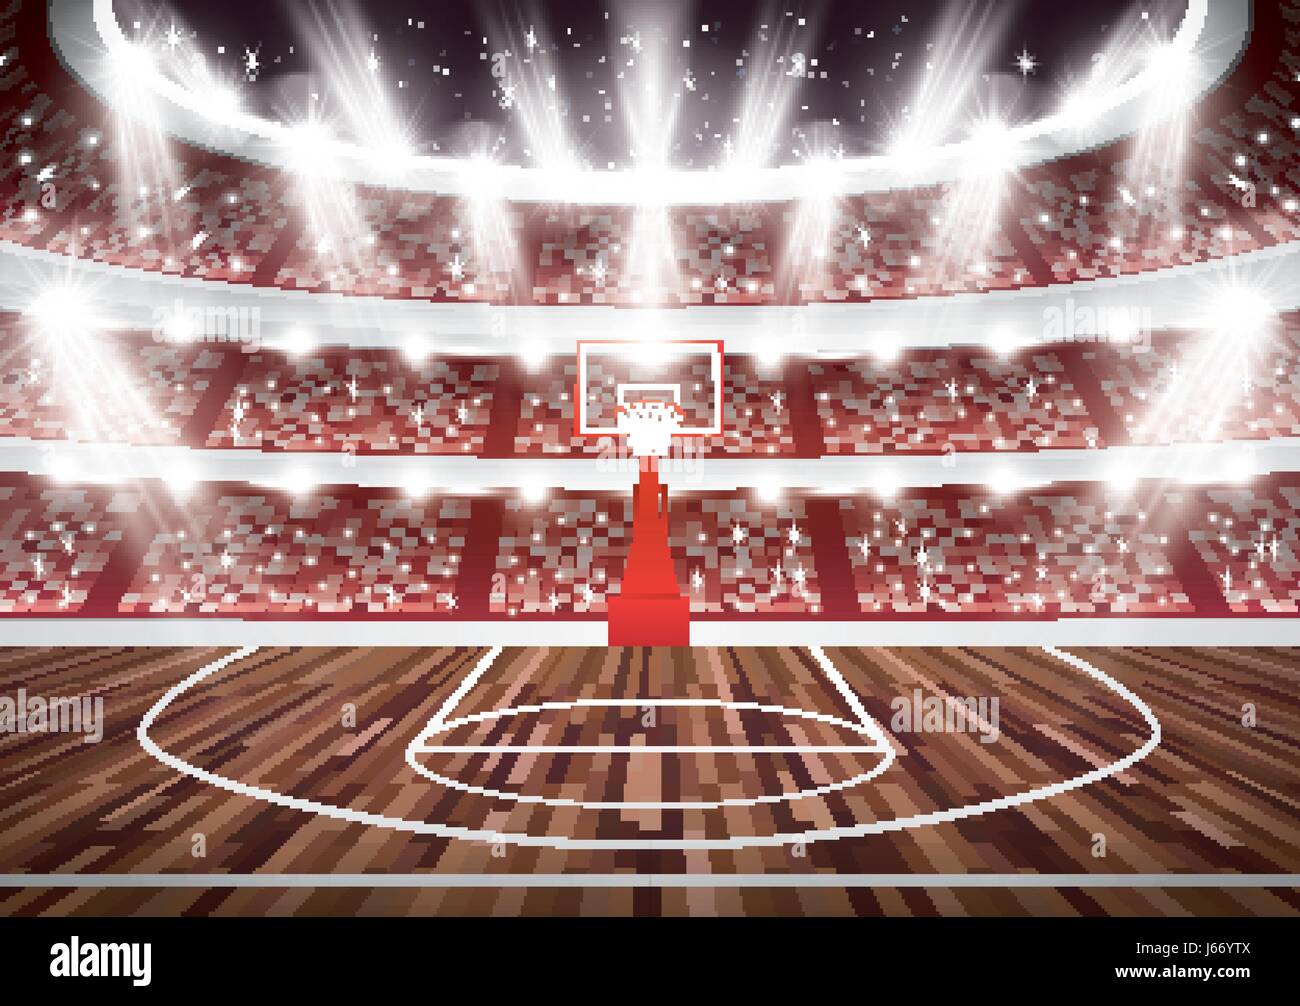 Campo da pallacanestro con Hoop e faretti. Illustrazione Vettoriale. Illustrazione Vettoriale